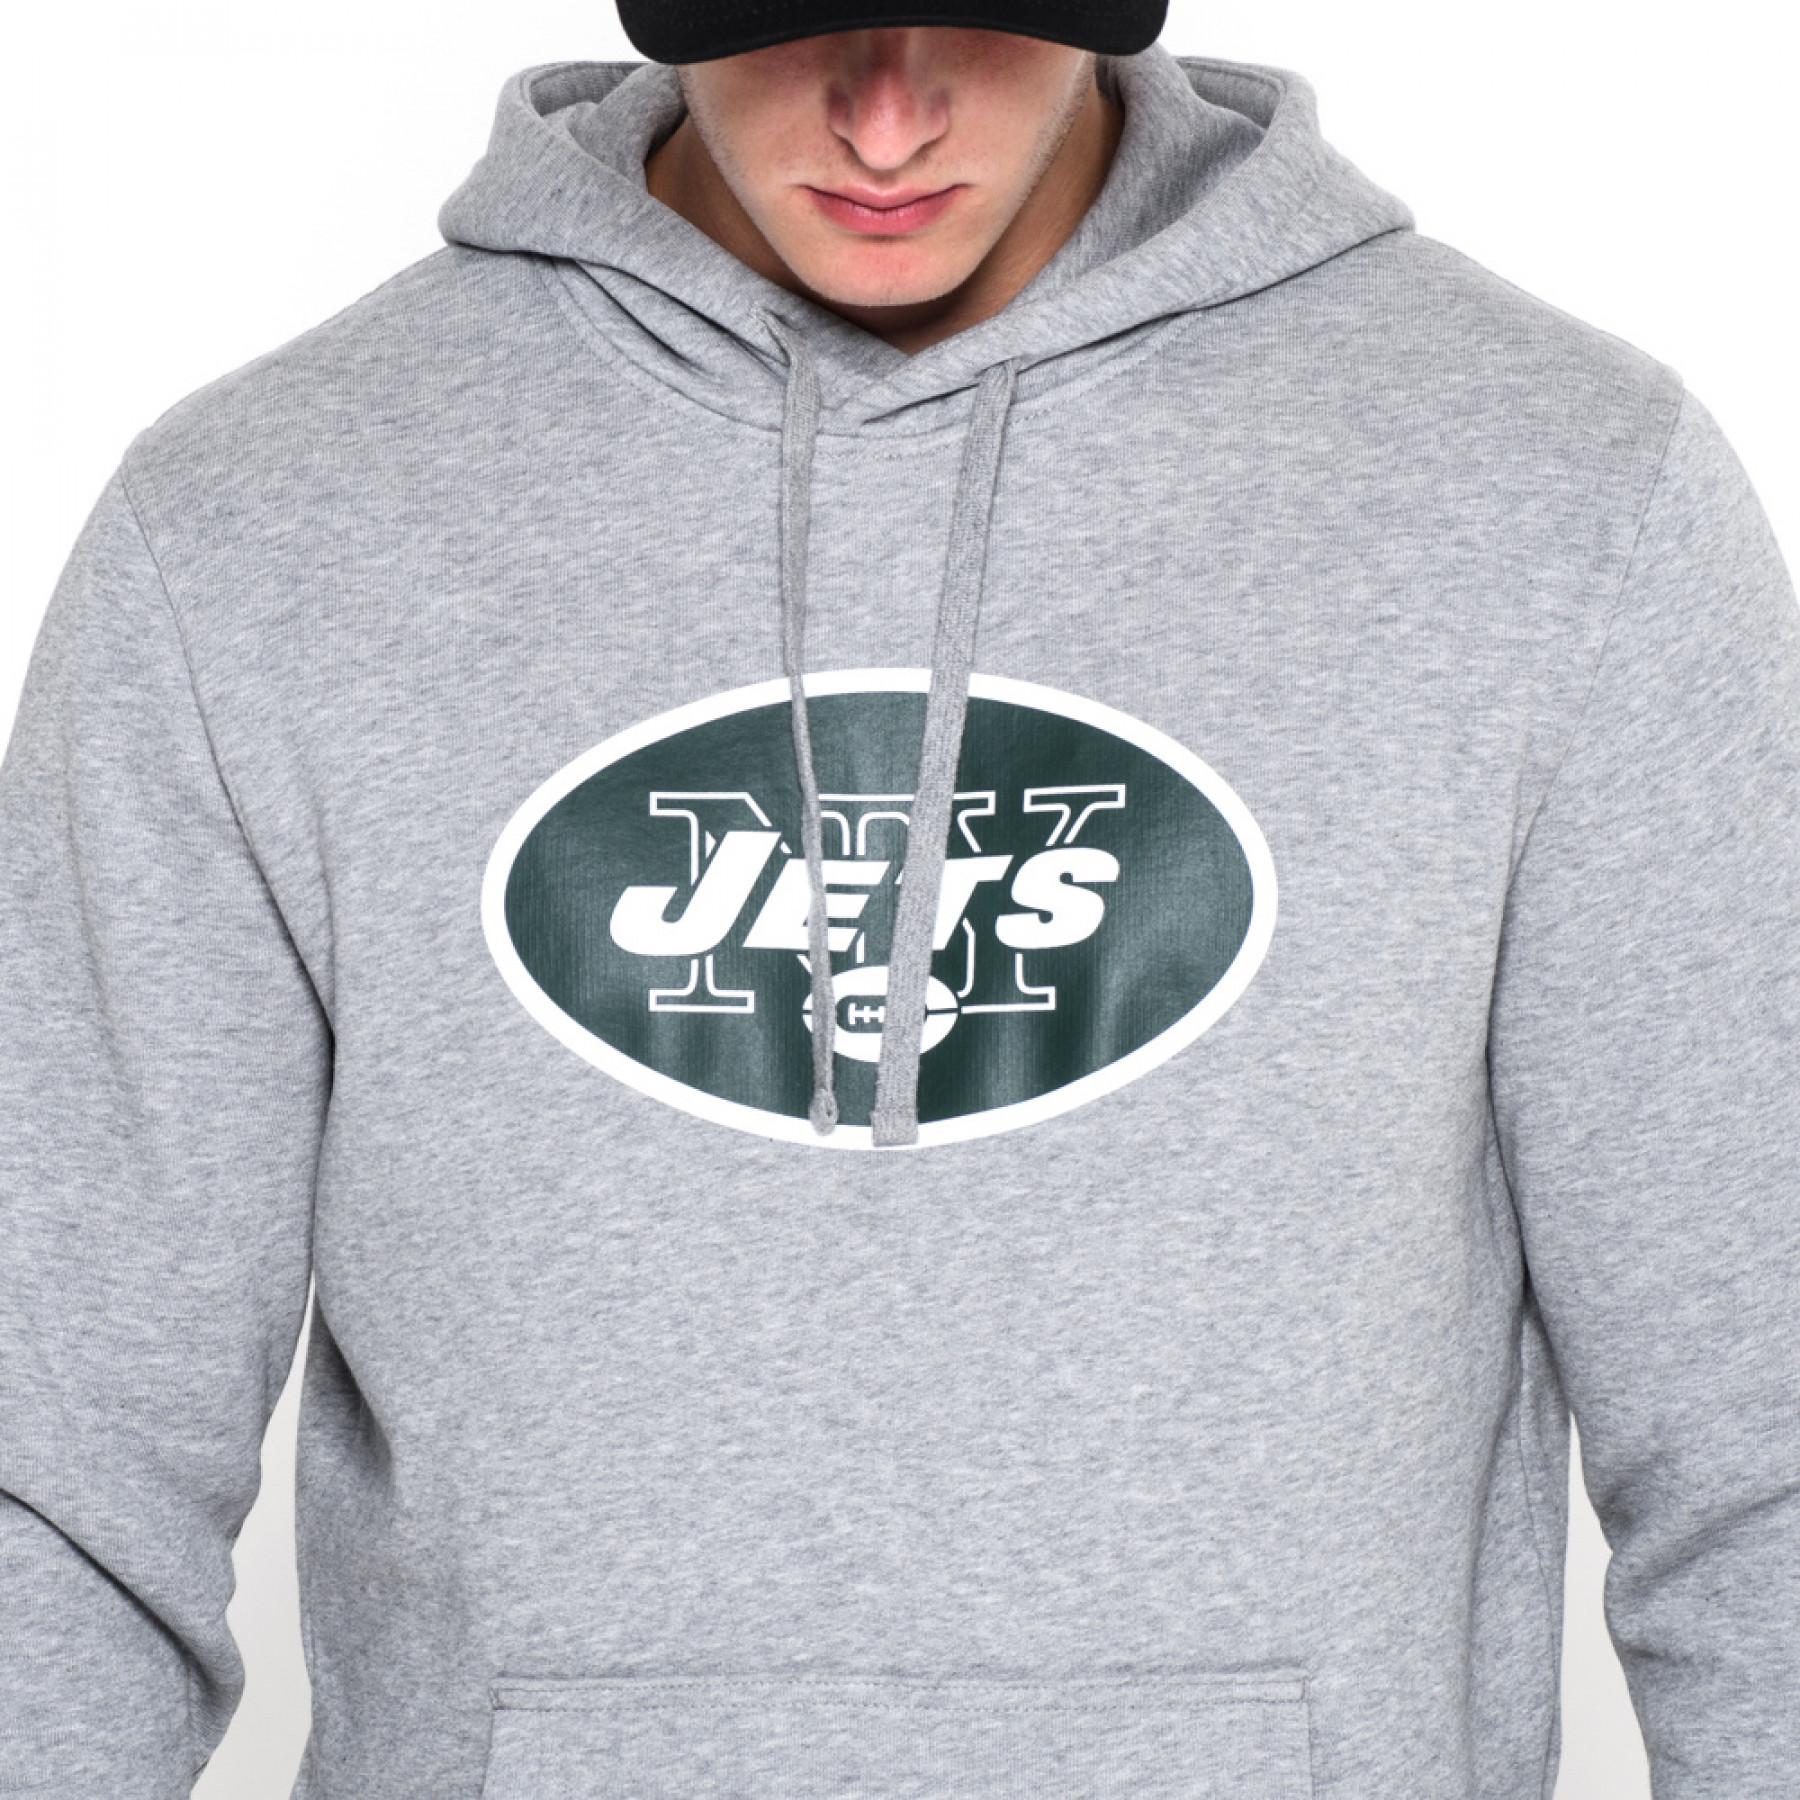 Sweat à capuche New Era avec logo de l'équipe New York Jets